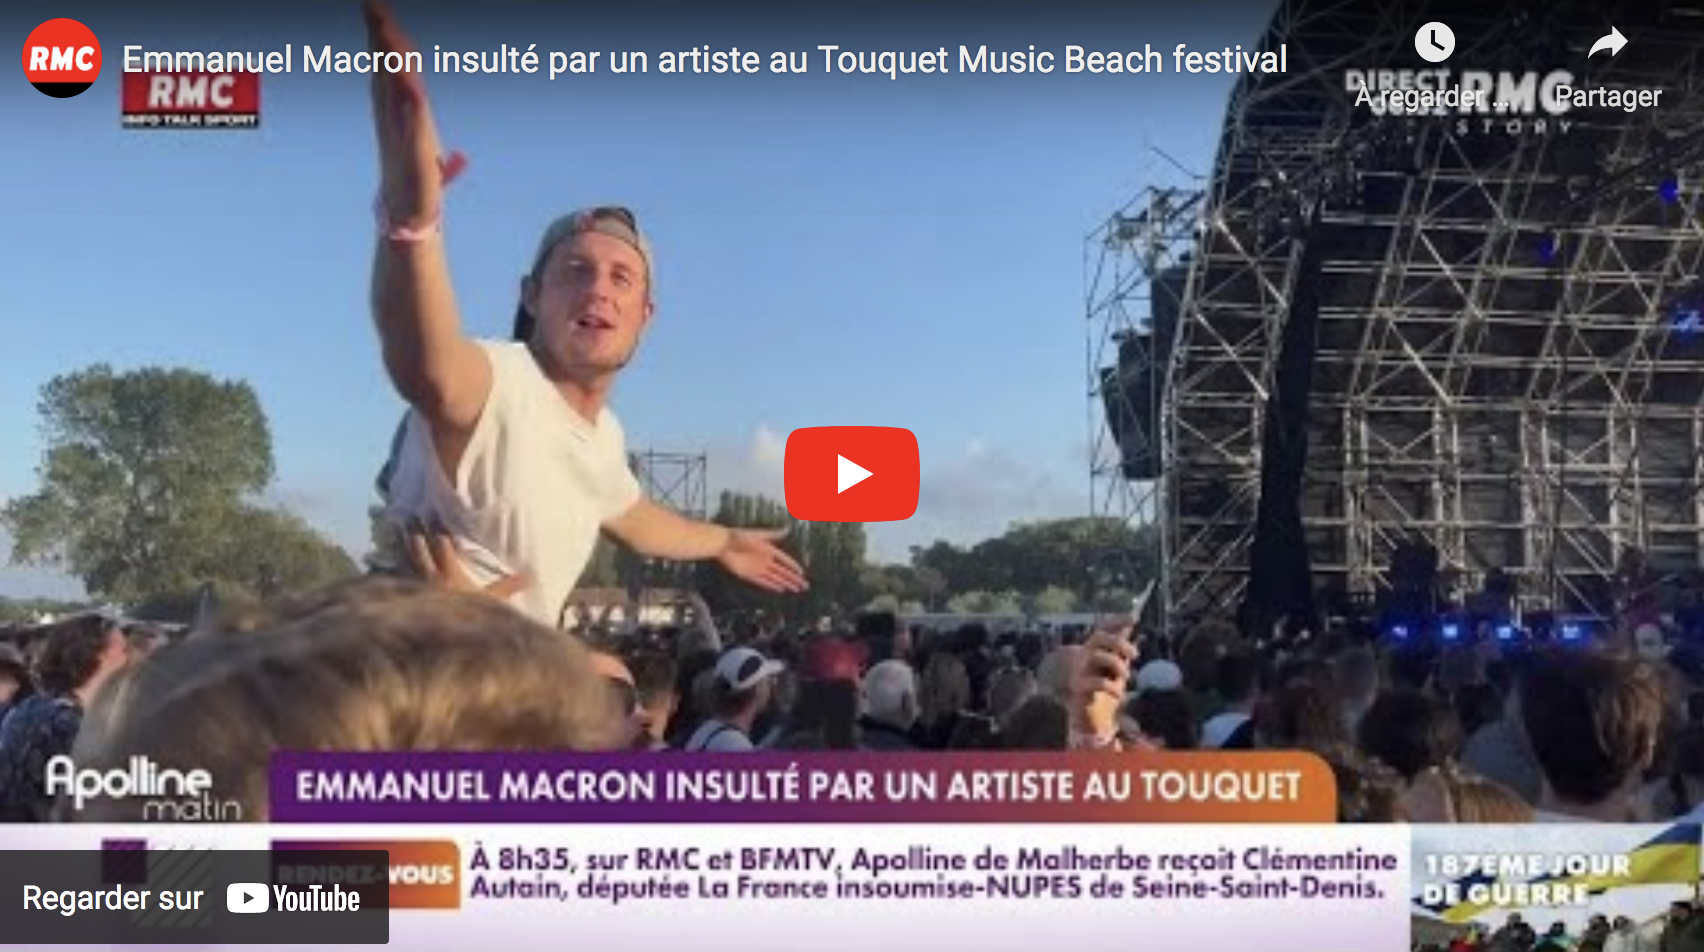 Emmanuel Macron insulté par un artiste au Touquet Music Beach festival (VIDÉO)